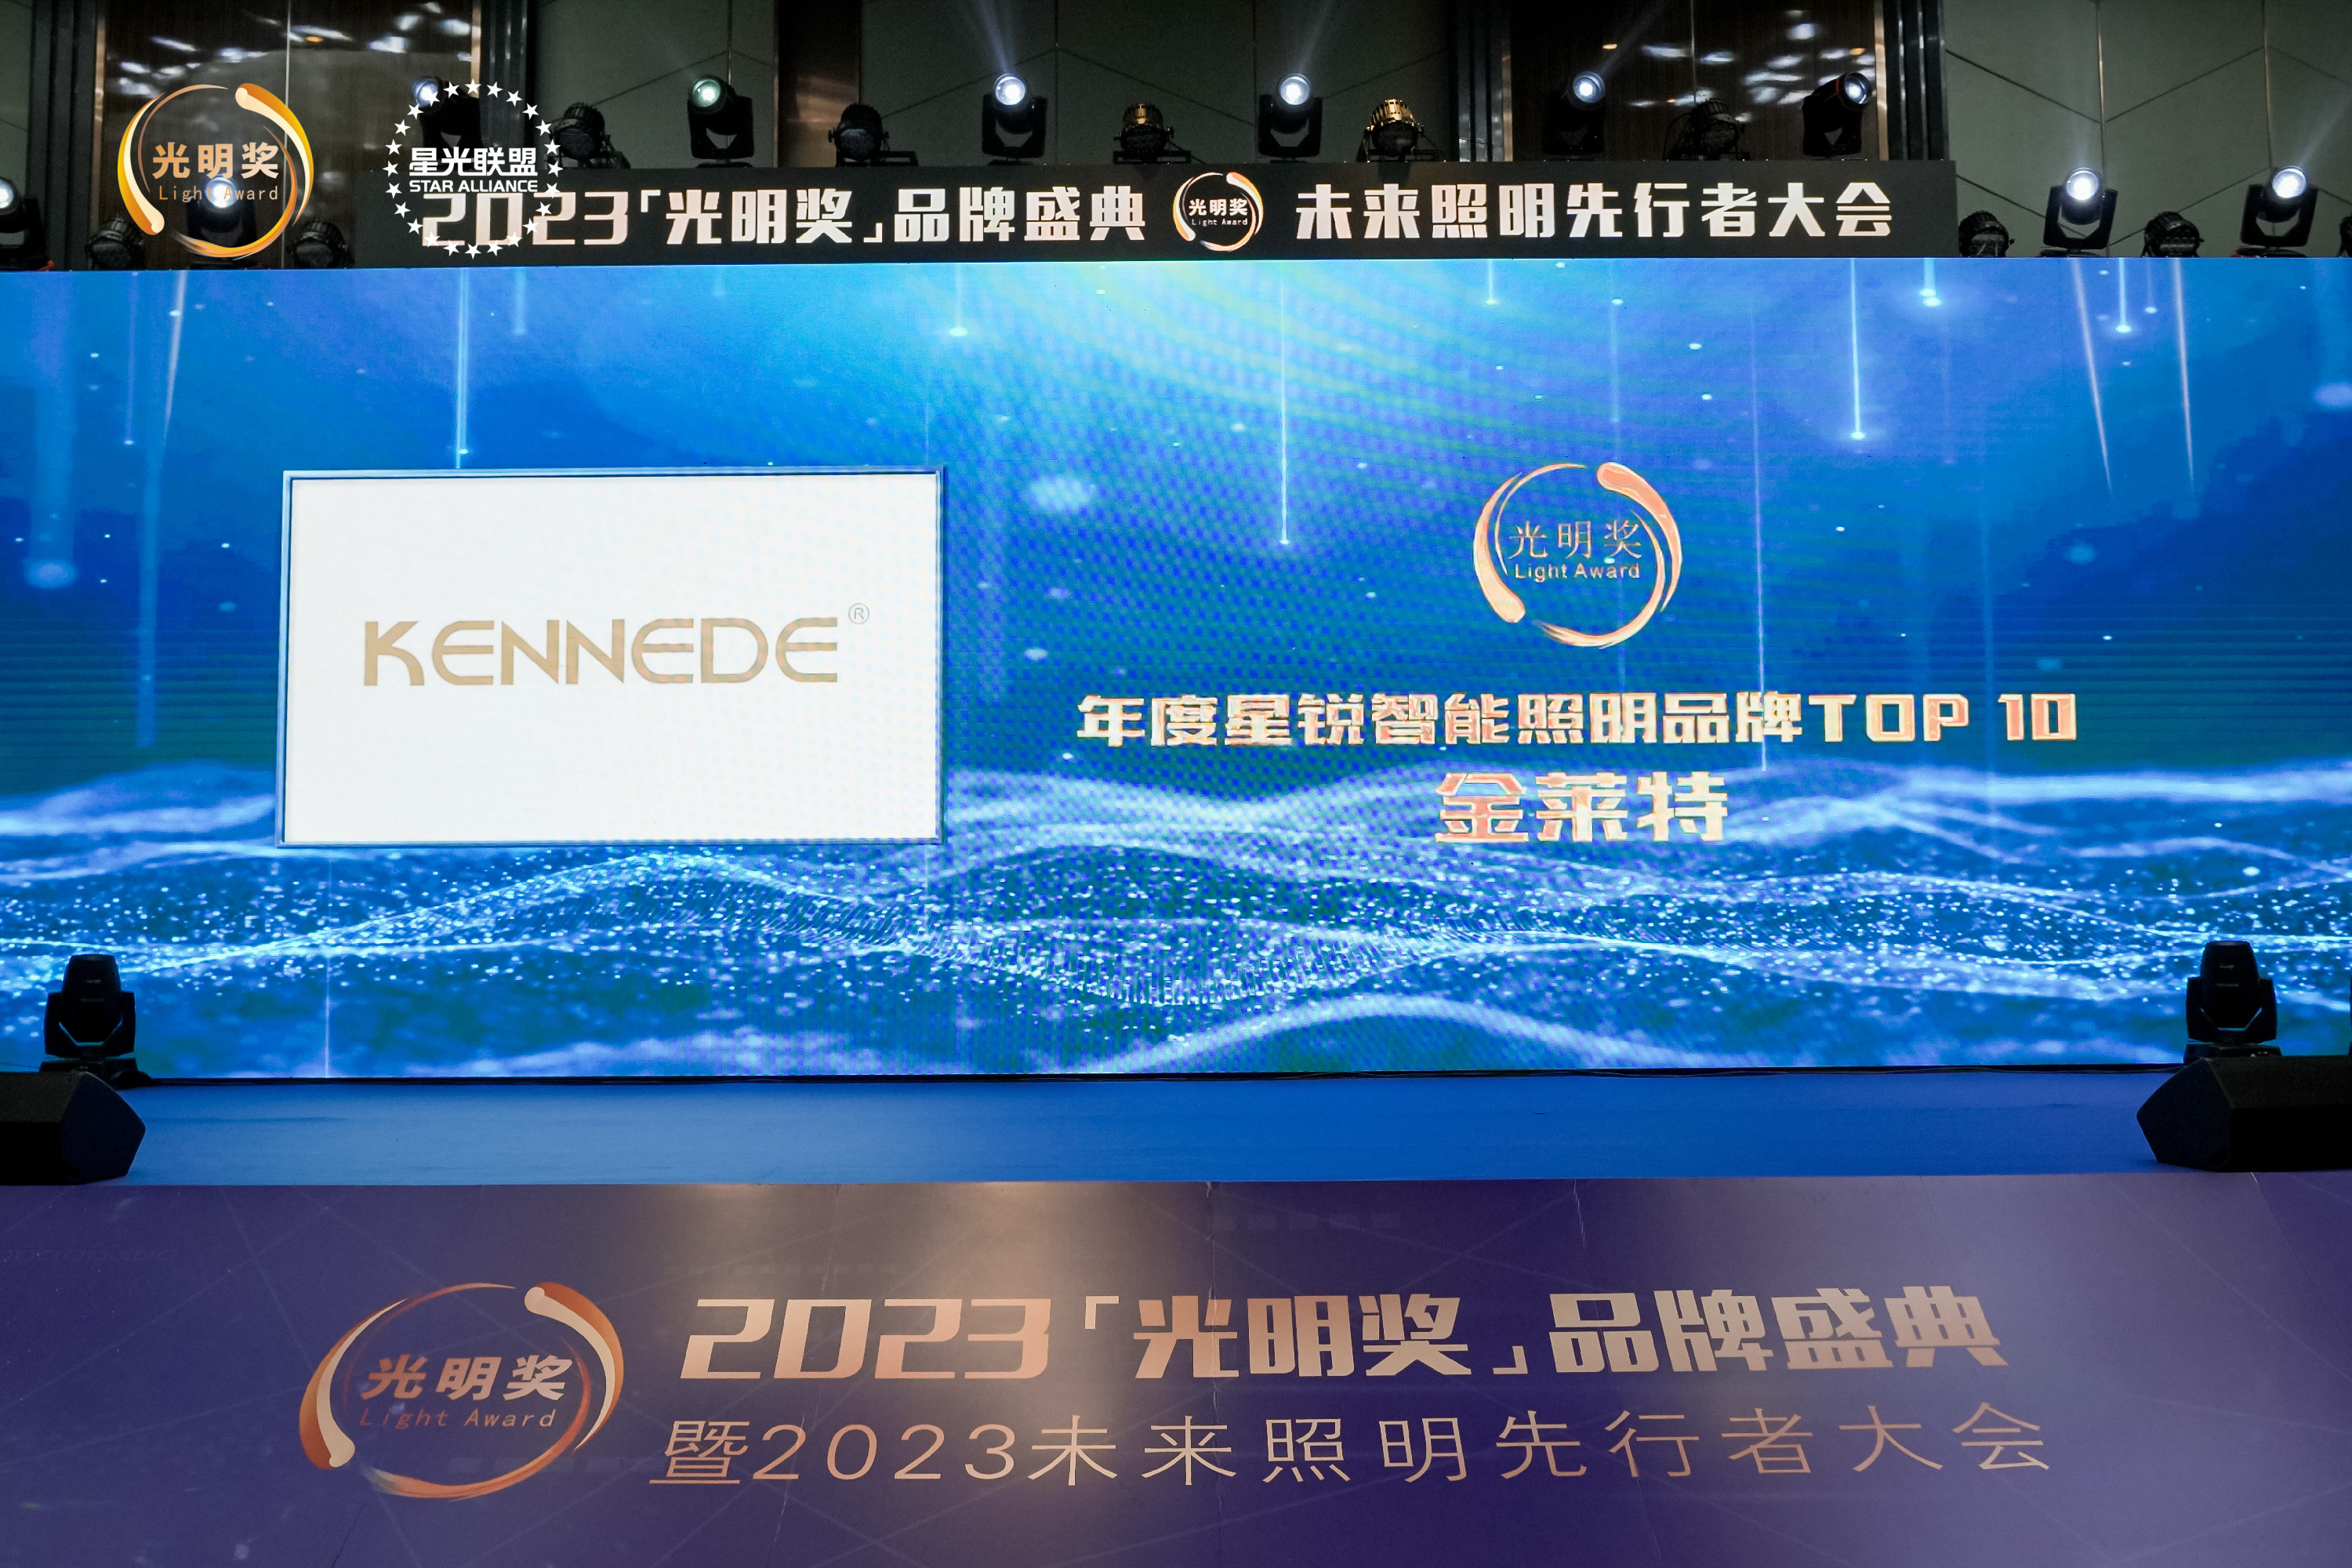 KENNEDE برنده جایزه "Star Smart Lighting Brand" در مراسم "Bright Award" 2023 شد.